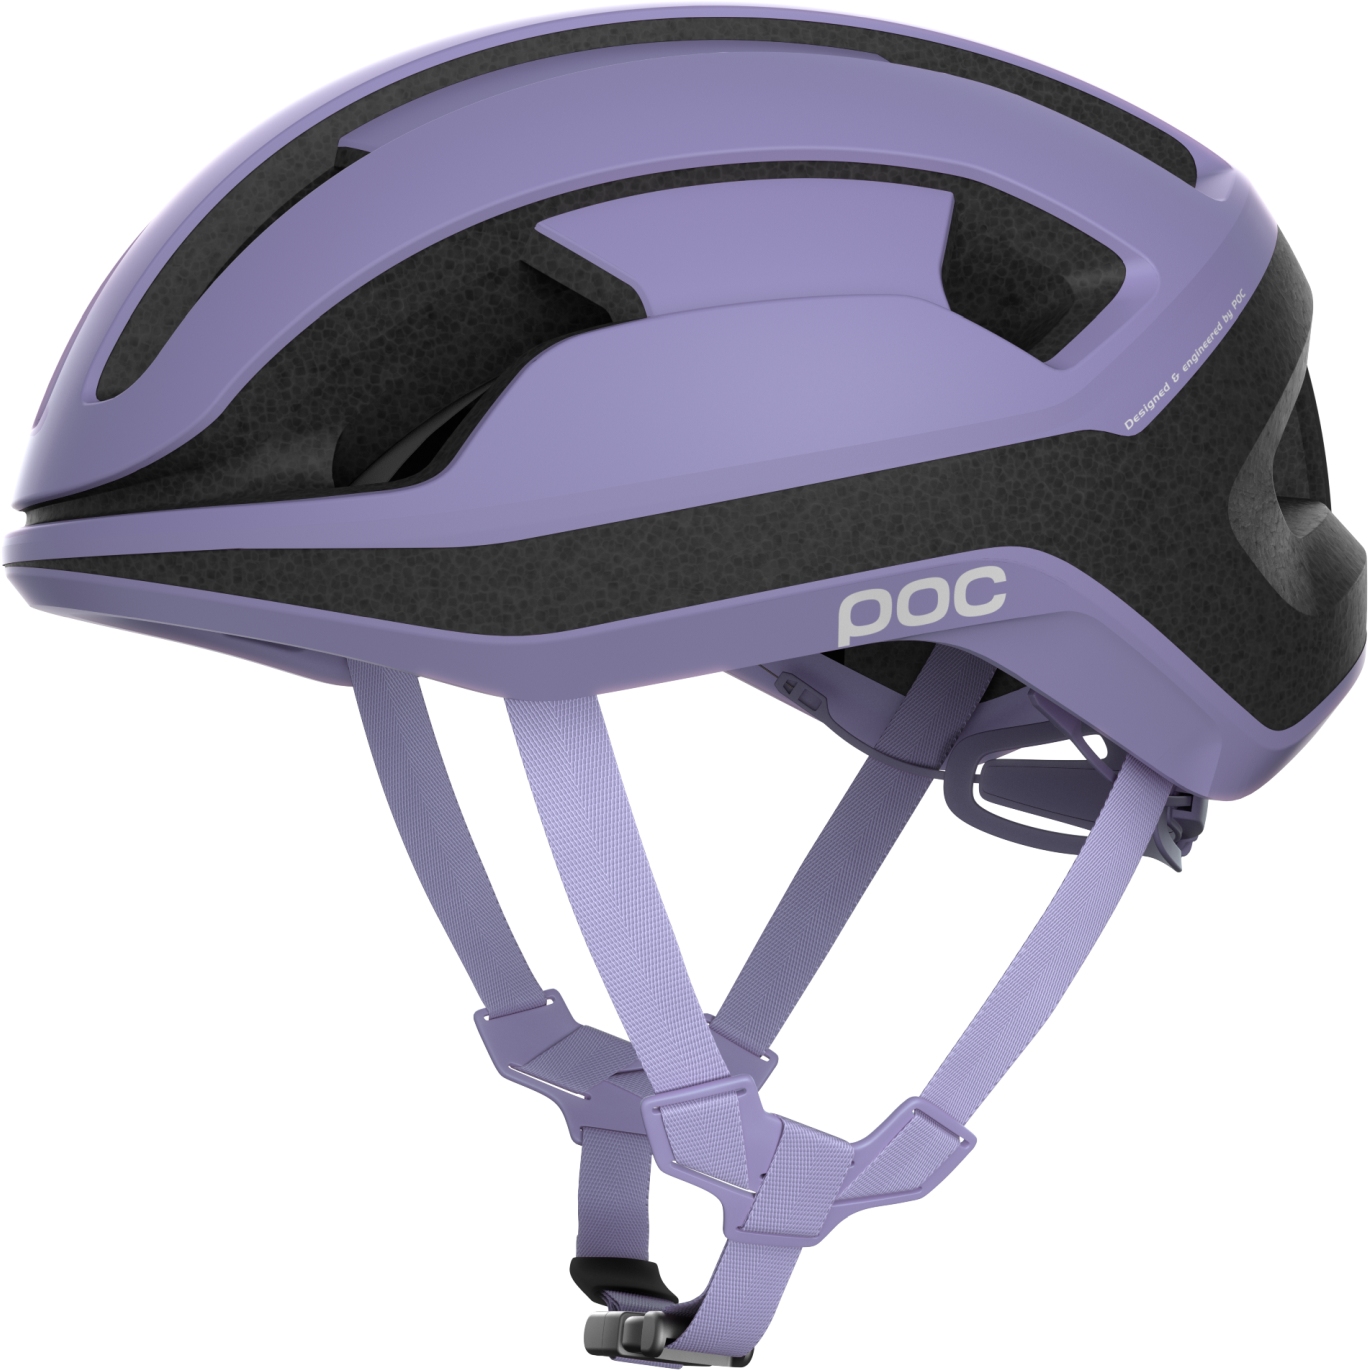 Produktbild von POC Omne Lite Helm - 1620 Purple Amethyst Matt